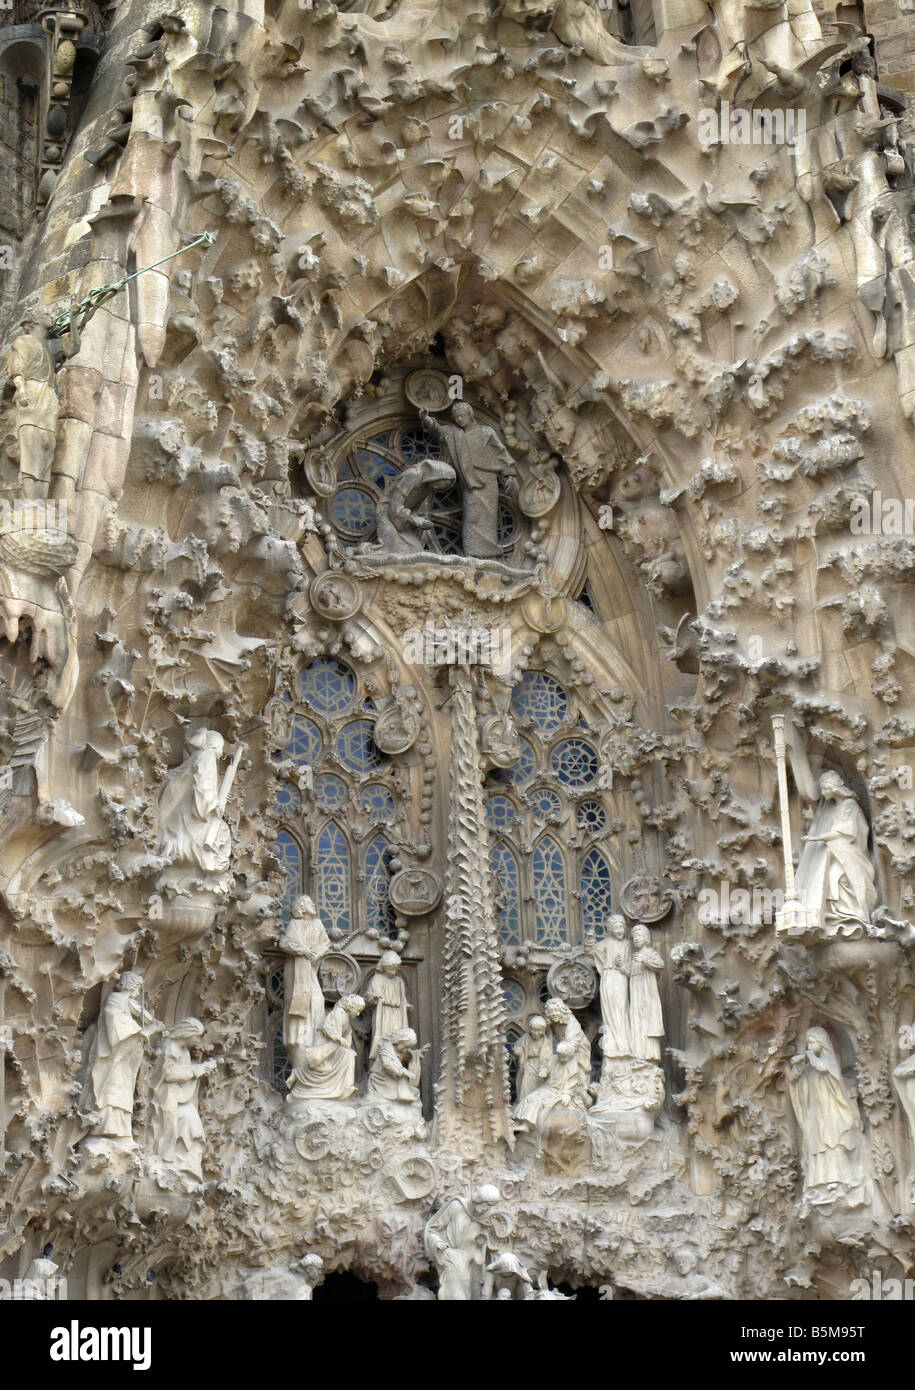 Inspiré de la nature de la pierre sculptée sur la façade de la nativité moderniste Gaudi et La Sagrada Familia, Barcelone, Espagne Banque D'Images